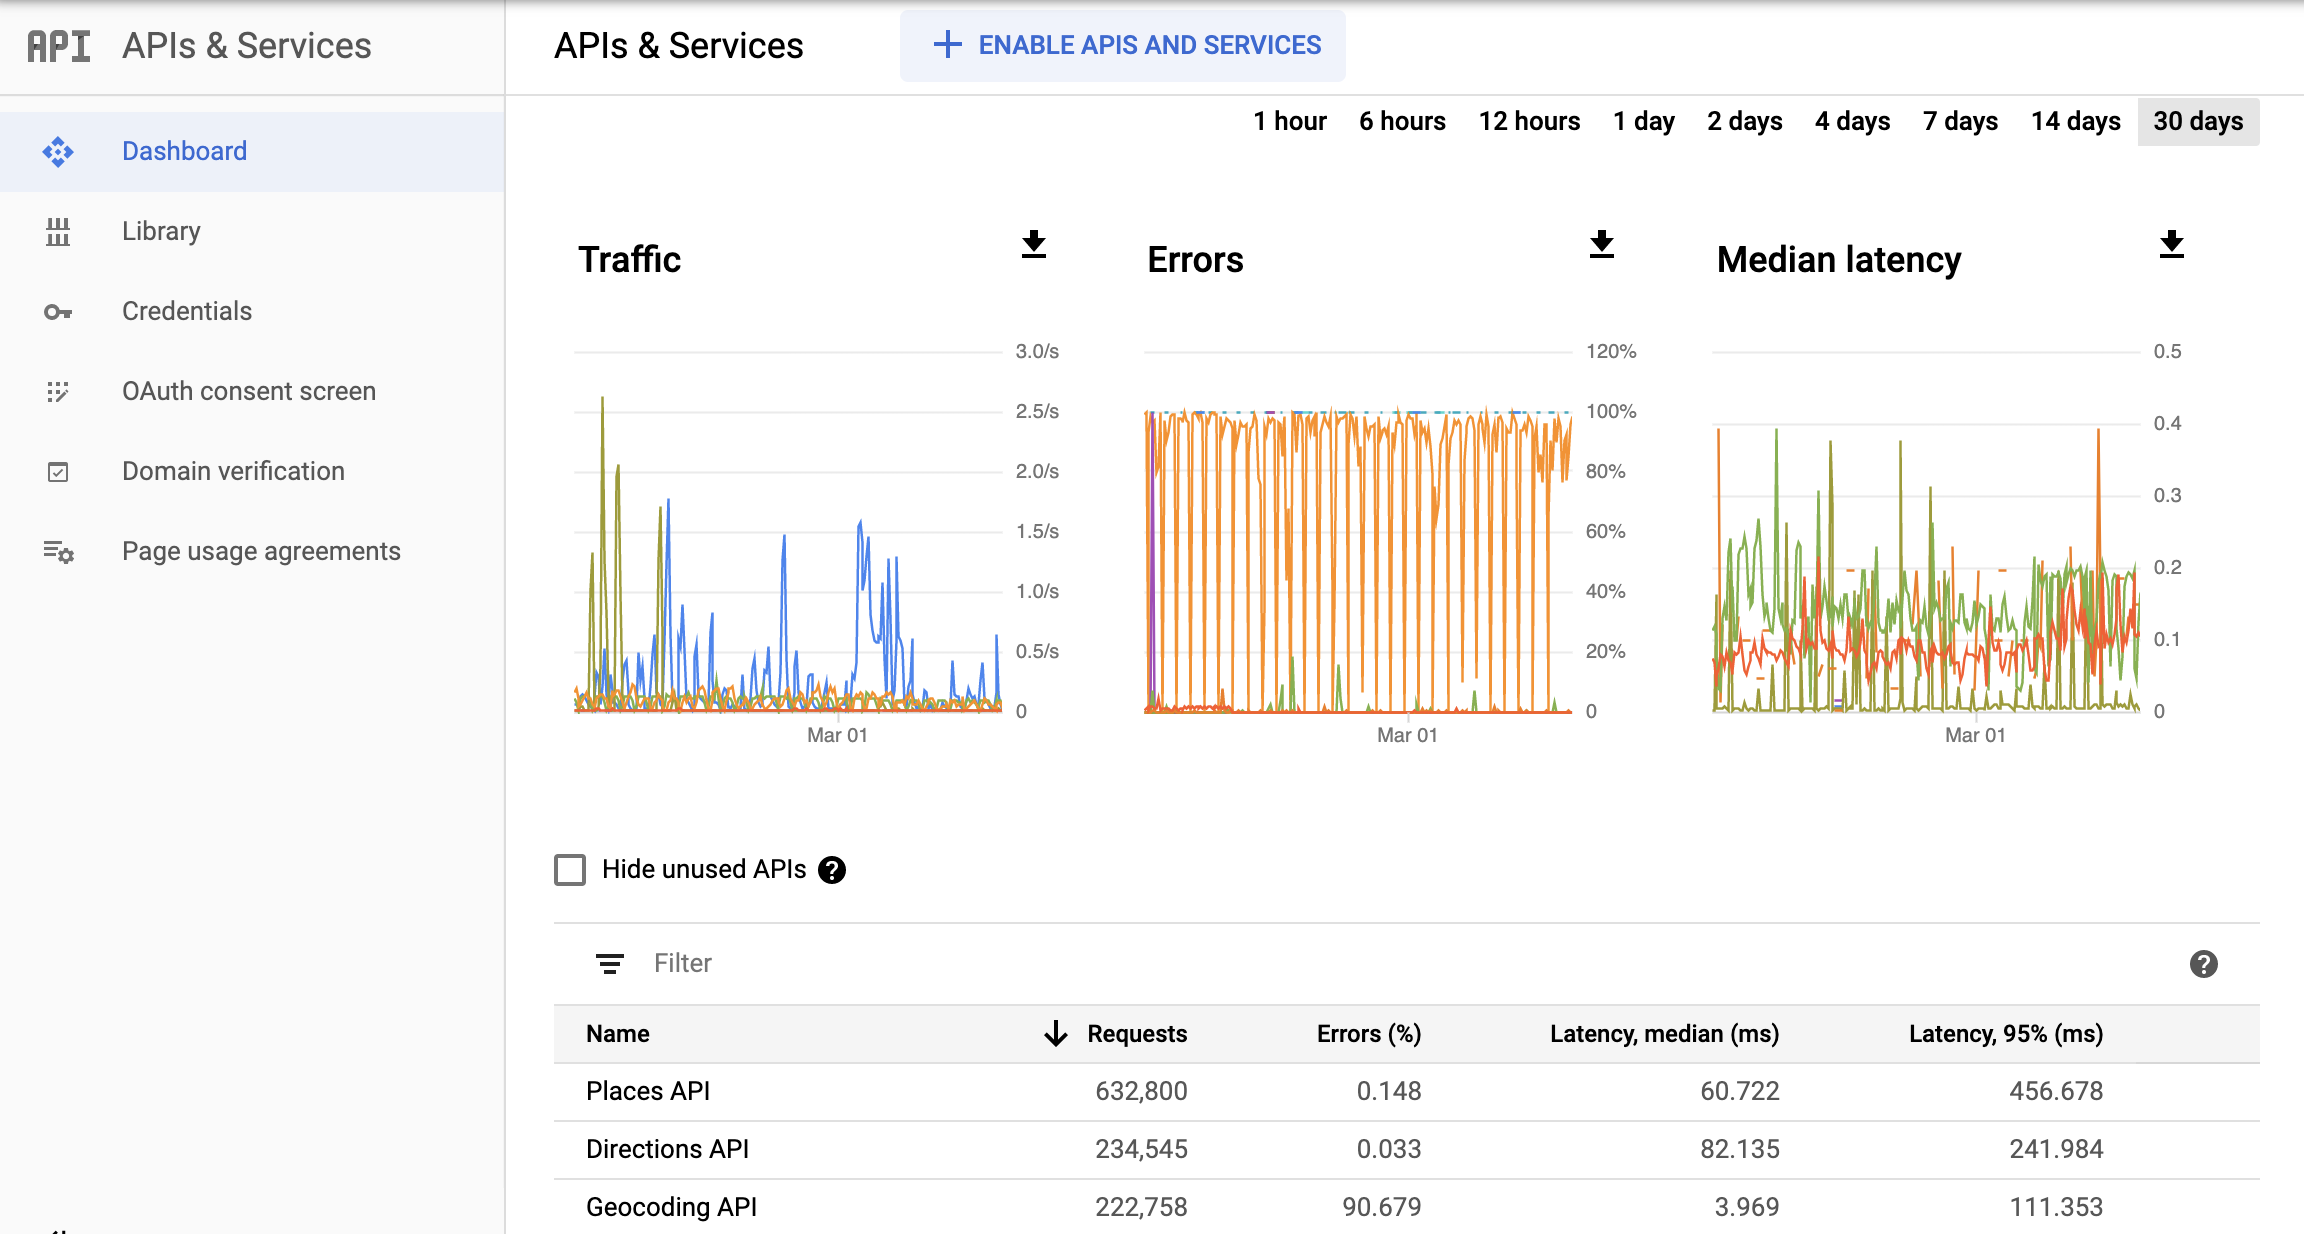 Google Cloud 控制台中 Monitoring API 页面的屏幕截图，显示了“API 和服务”报告的信息中心。其中分别显示了“流量”“错误”和“延迟时间中位数”图表。这些图表可显示 1 小时到 30 天的数据。